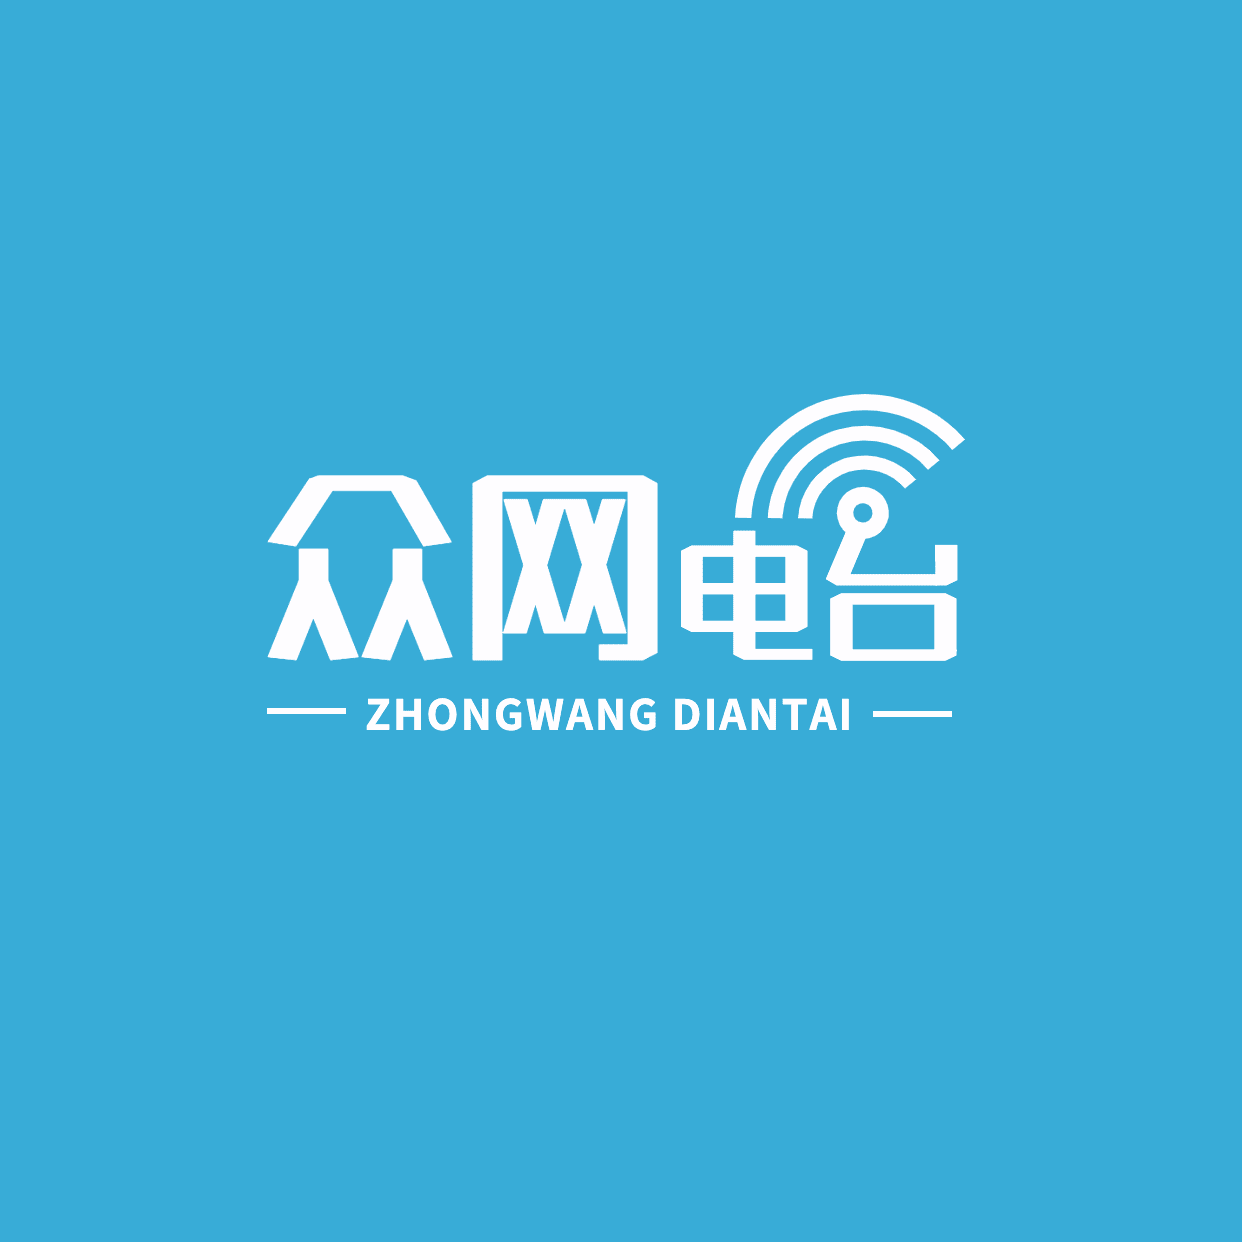 通用文化传媒众网电台logo设计